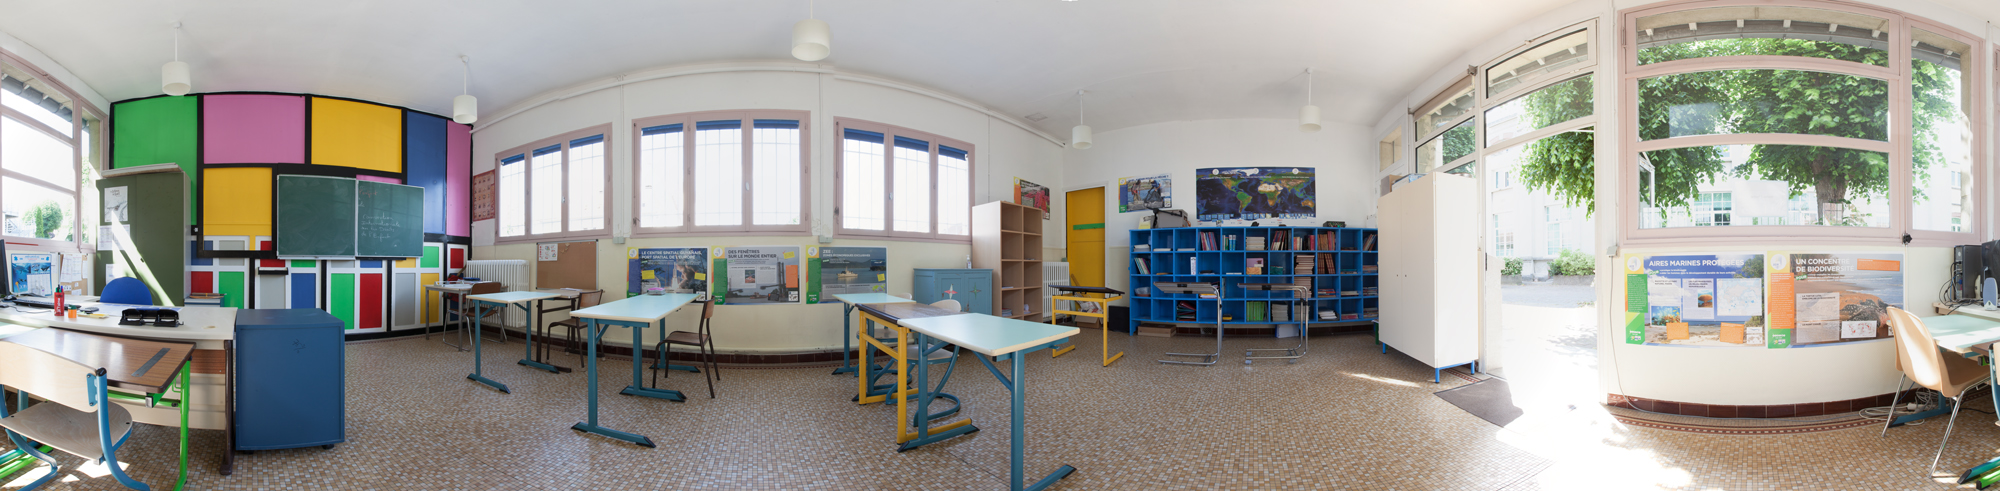 Les salles de cours se situent dans l'enceinte du centre au sein d'un bâtiment annexe au bâtiment principal : une salle par double niveau. Exemple ci-dessus : salle de cours des 6ème-5ème.